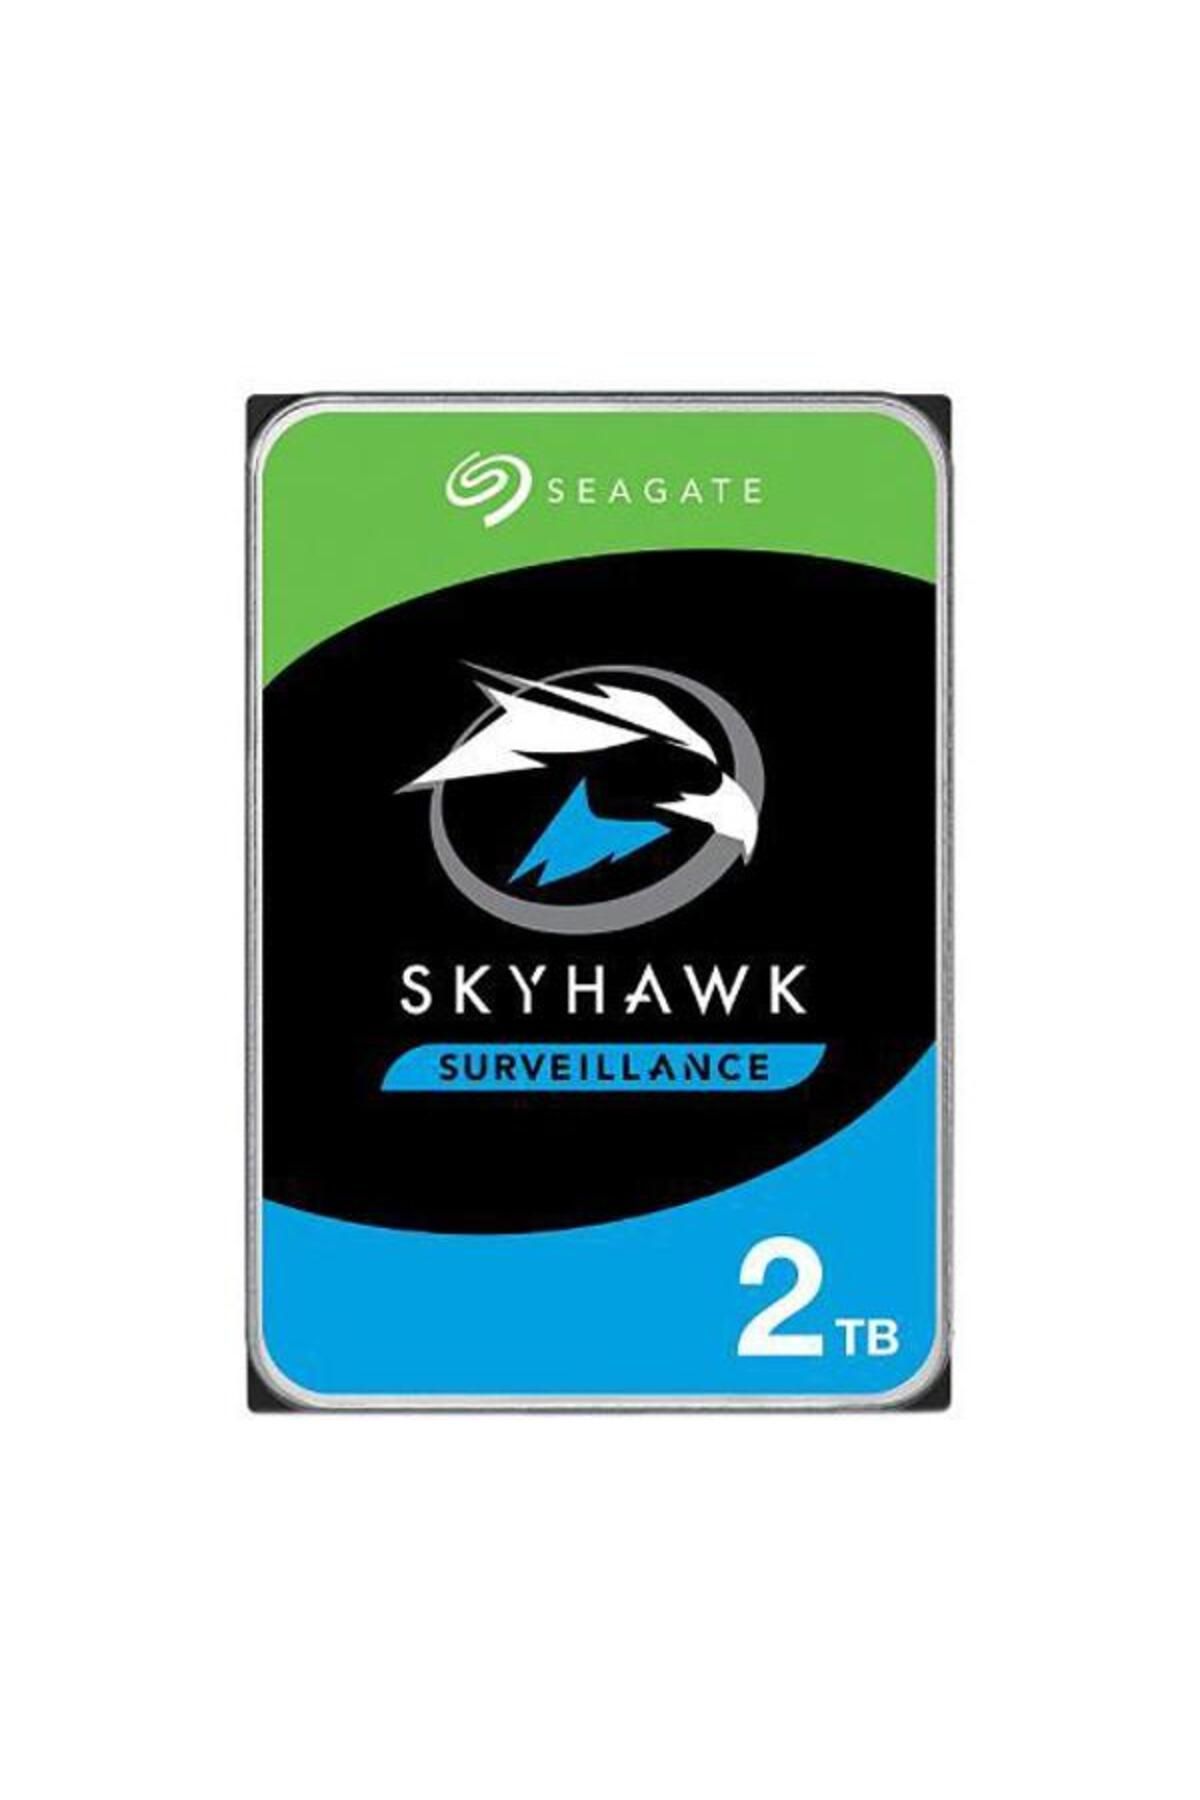 Seagate St2000vx015 Skyhawk 3.5" 2tb 5900rpm 256mb Sata 7/24 Harddisk